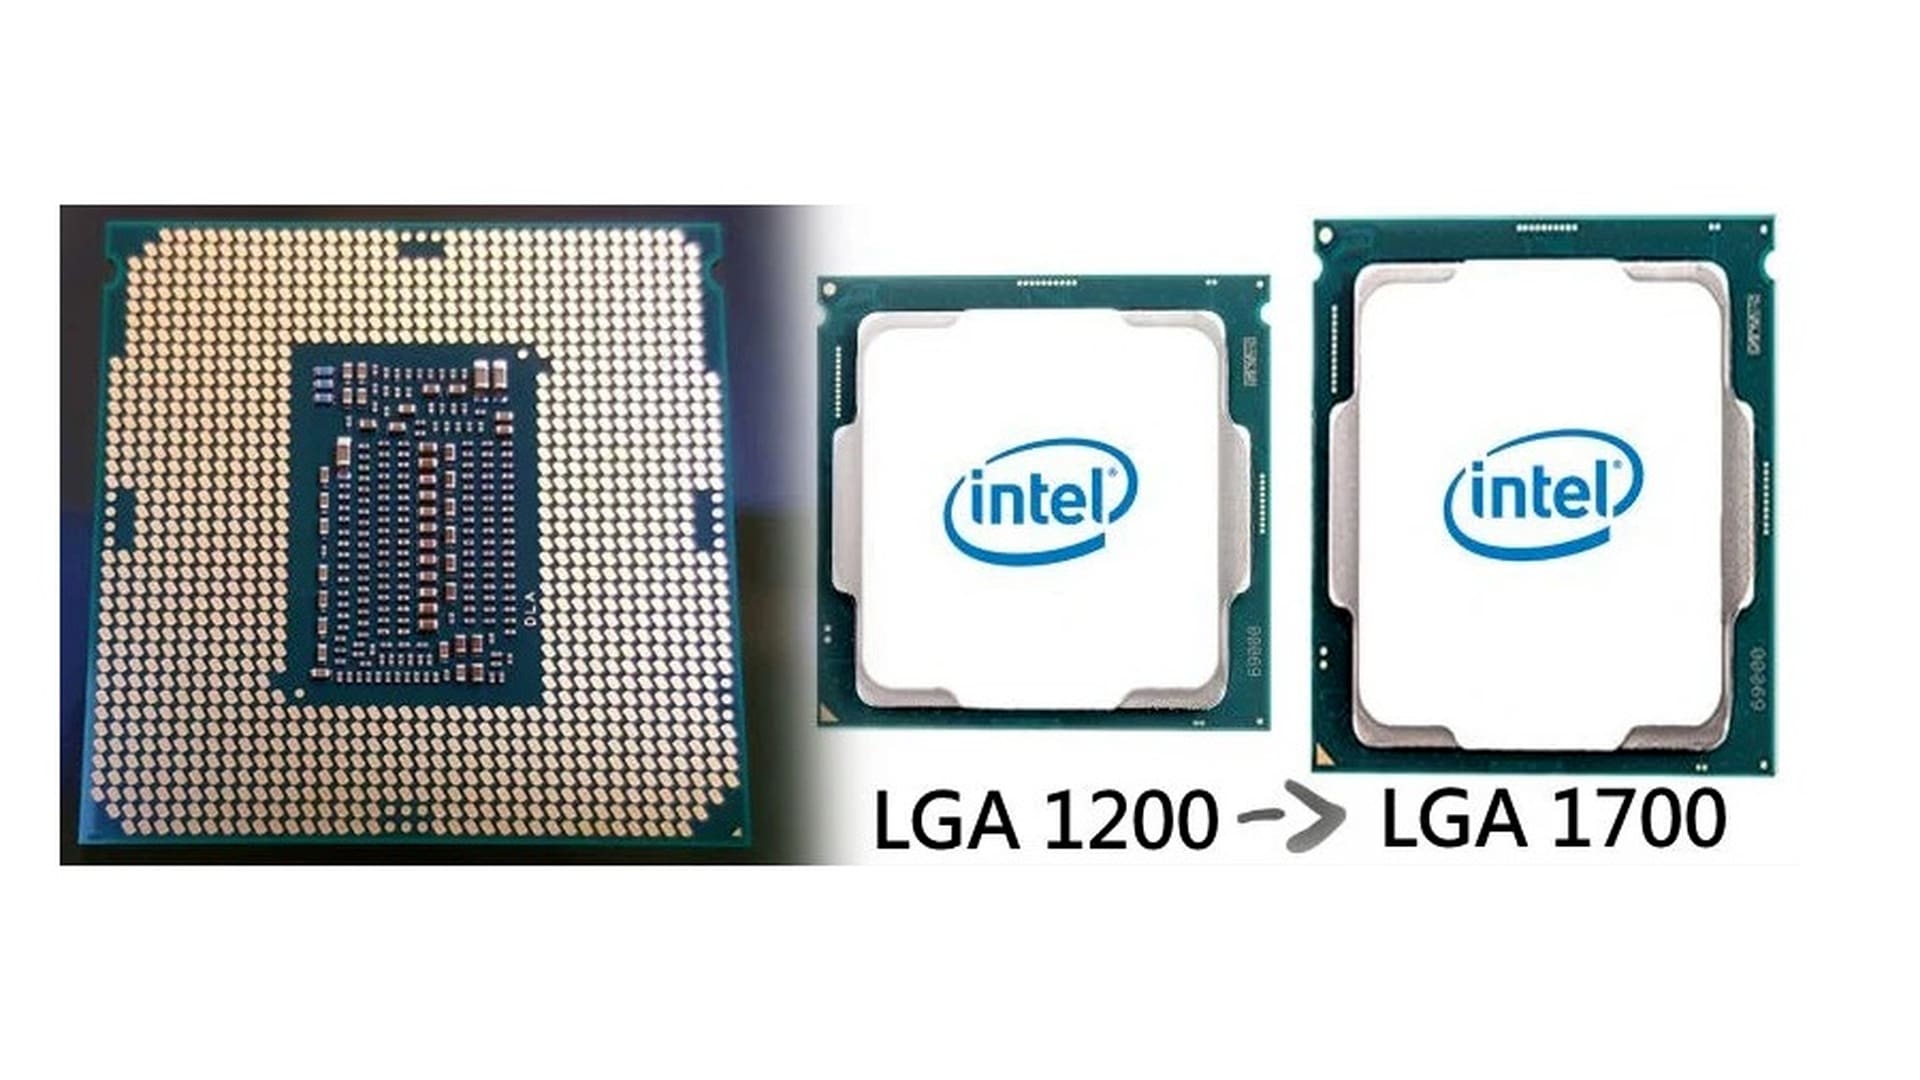 Процессор i5 lga 1700. Сокет Интел 1700. LGA 1700 процессоры Intel. LGA 1700 vs LGA 1200 процессор. Сокет Интел лга 1700.